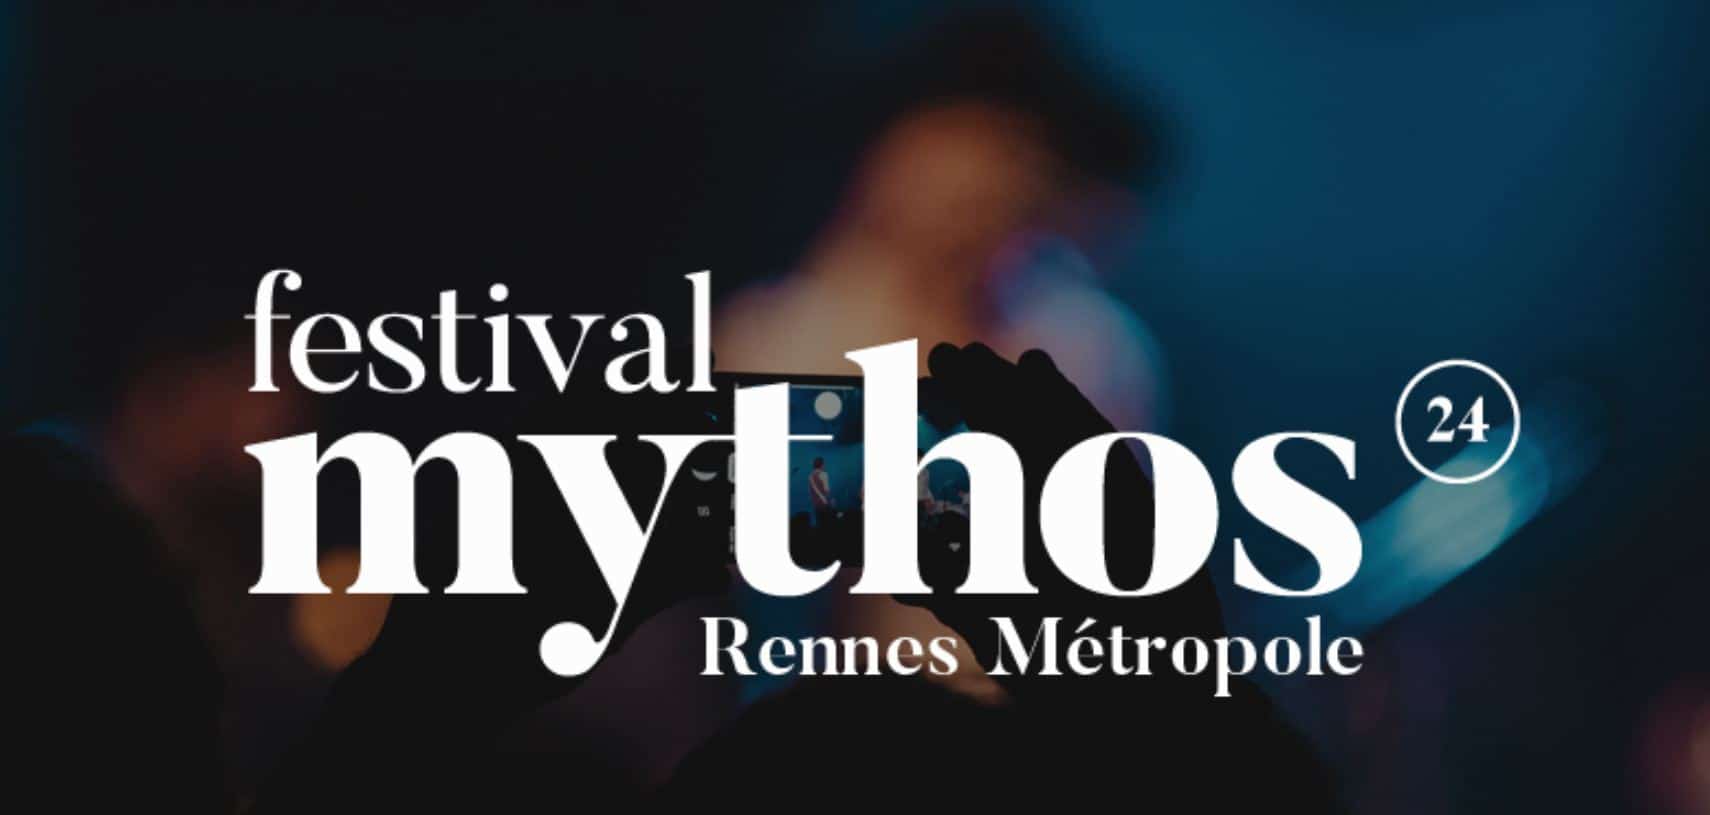 Le festival Mythos se réinvente - Sceneweb